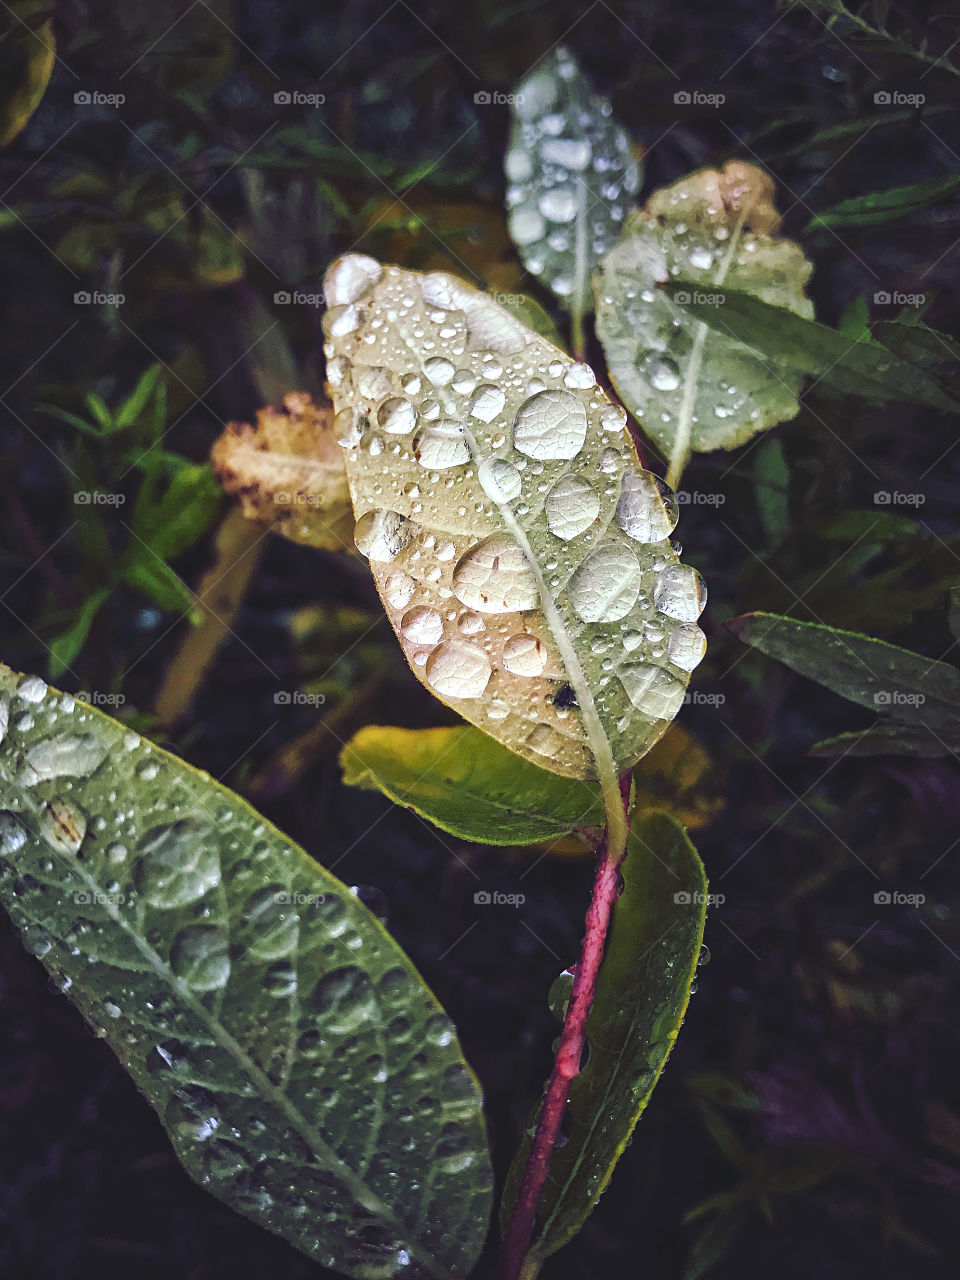 Raindrops on leaves 